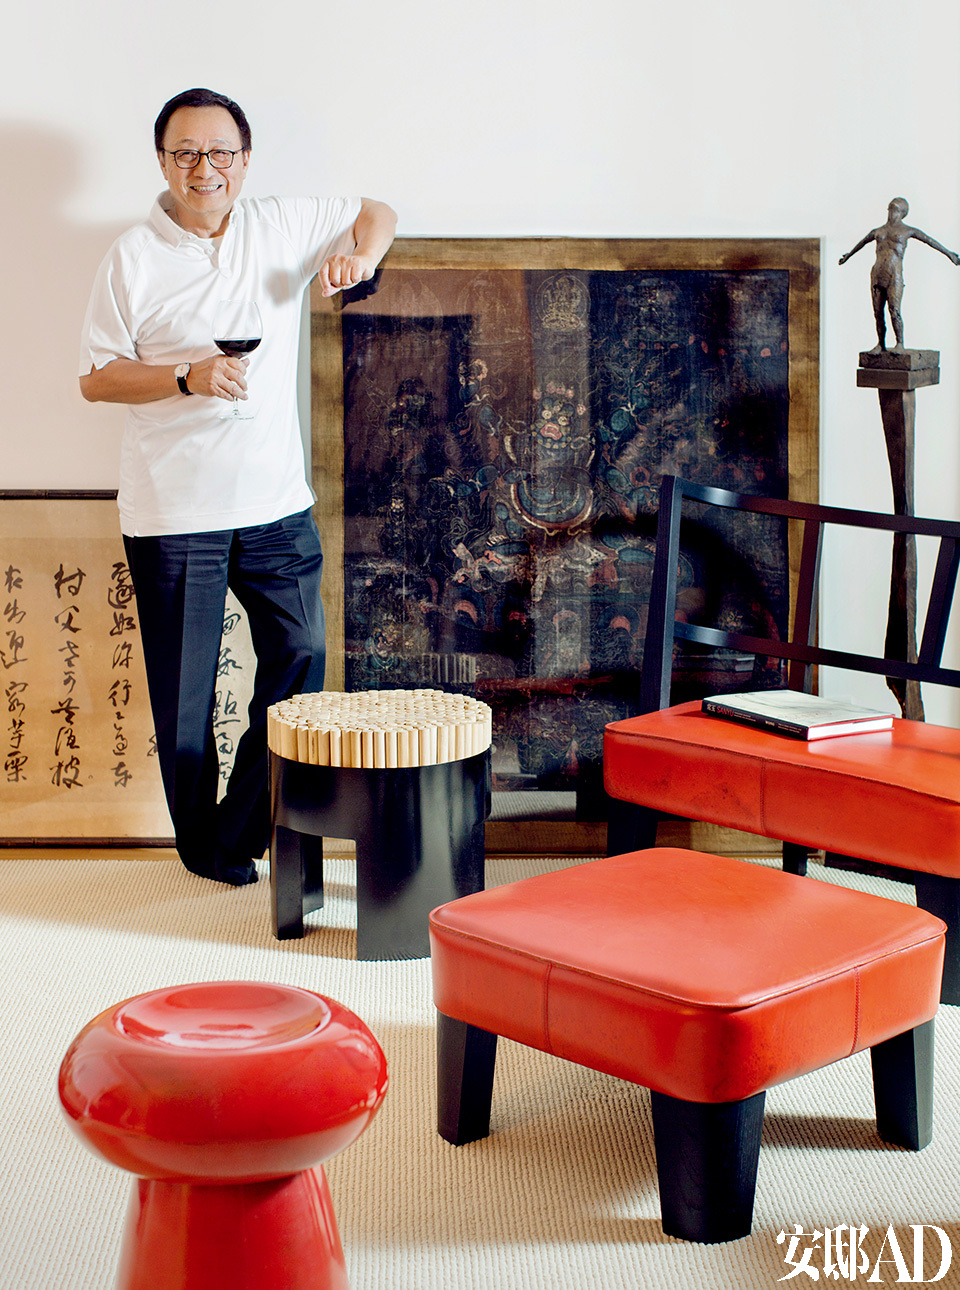 主人: 杜文正，台湾室内设计界资深专家，建筑大师汉宝德最得意的门生之一，也是台湾上流社会最喜爱的室内设计师，台湾标志性的豪宅项目“帝宝”即是他的作品。同时，他也是一位资深的艺术品及老家具收藏家，爱好广泛且深入，具有深厚的人文修养。因此他也被誉为“带有人文味道的新中式风格”代言人。